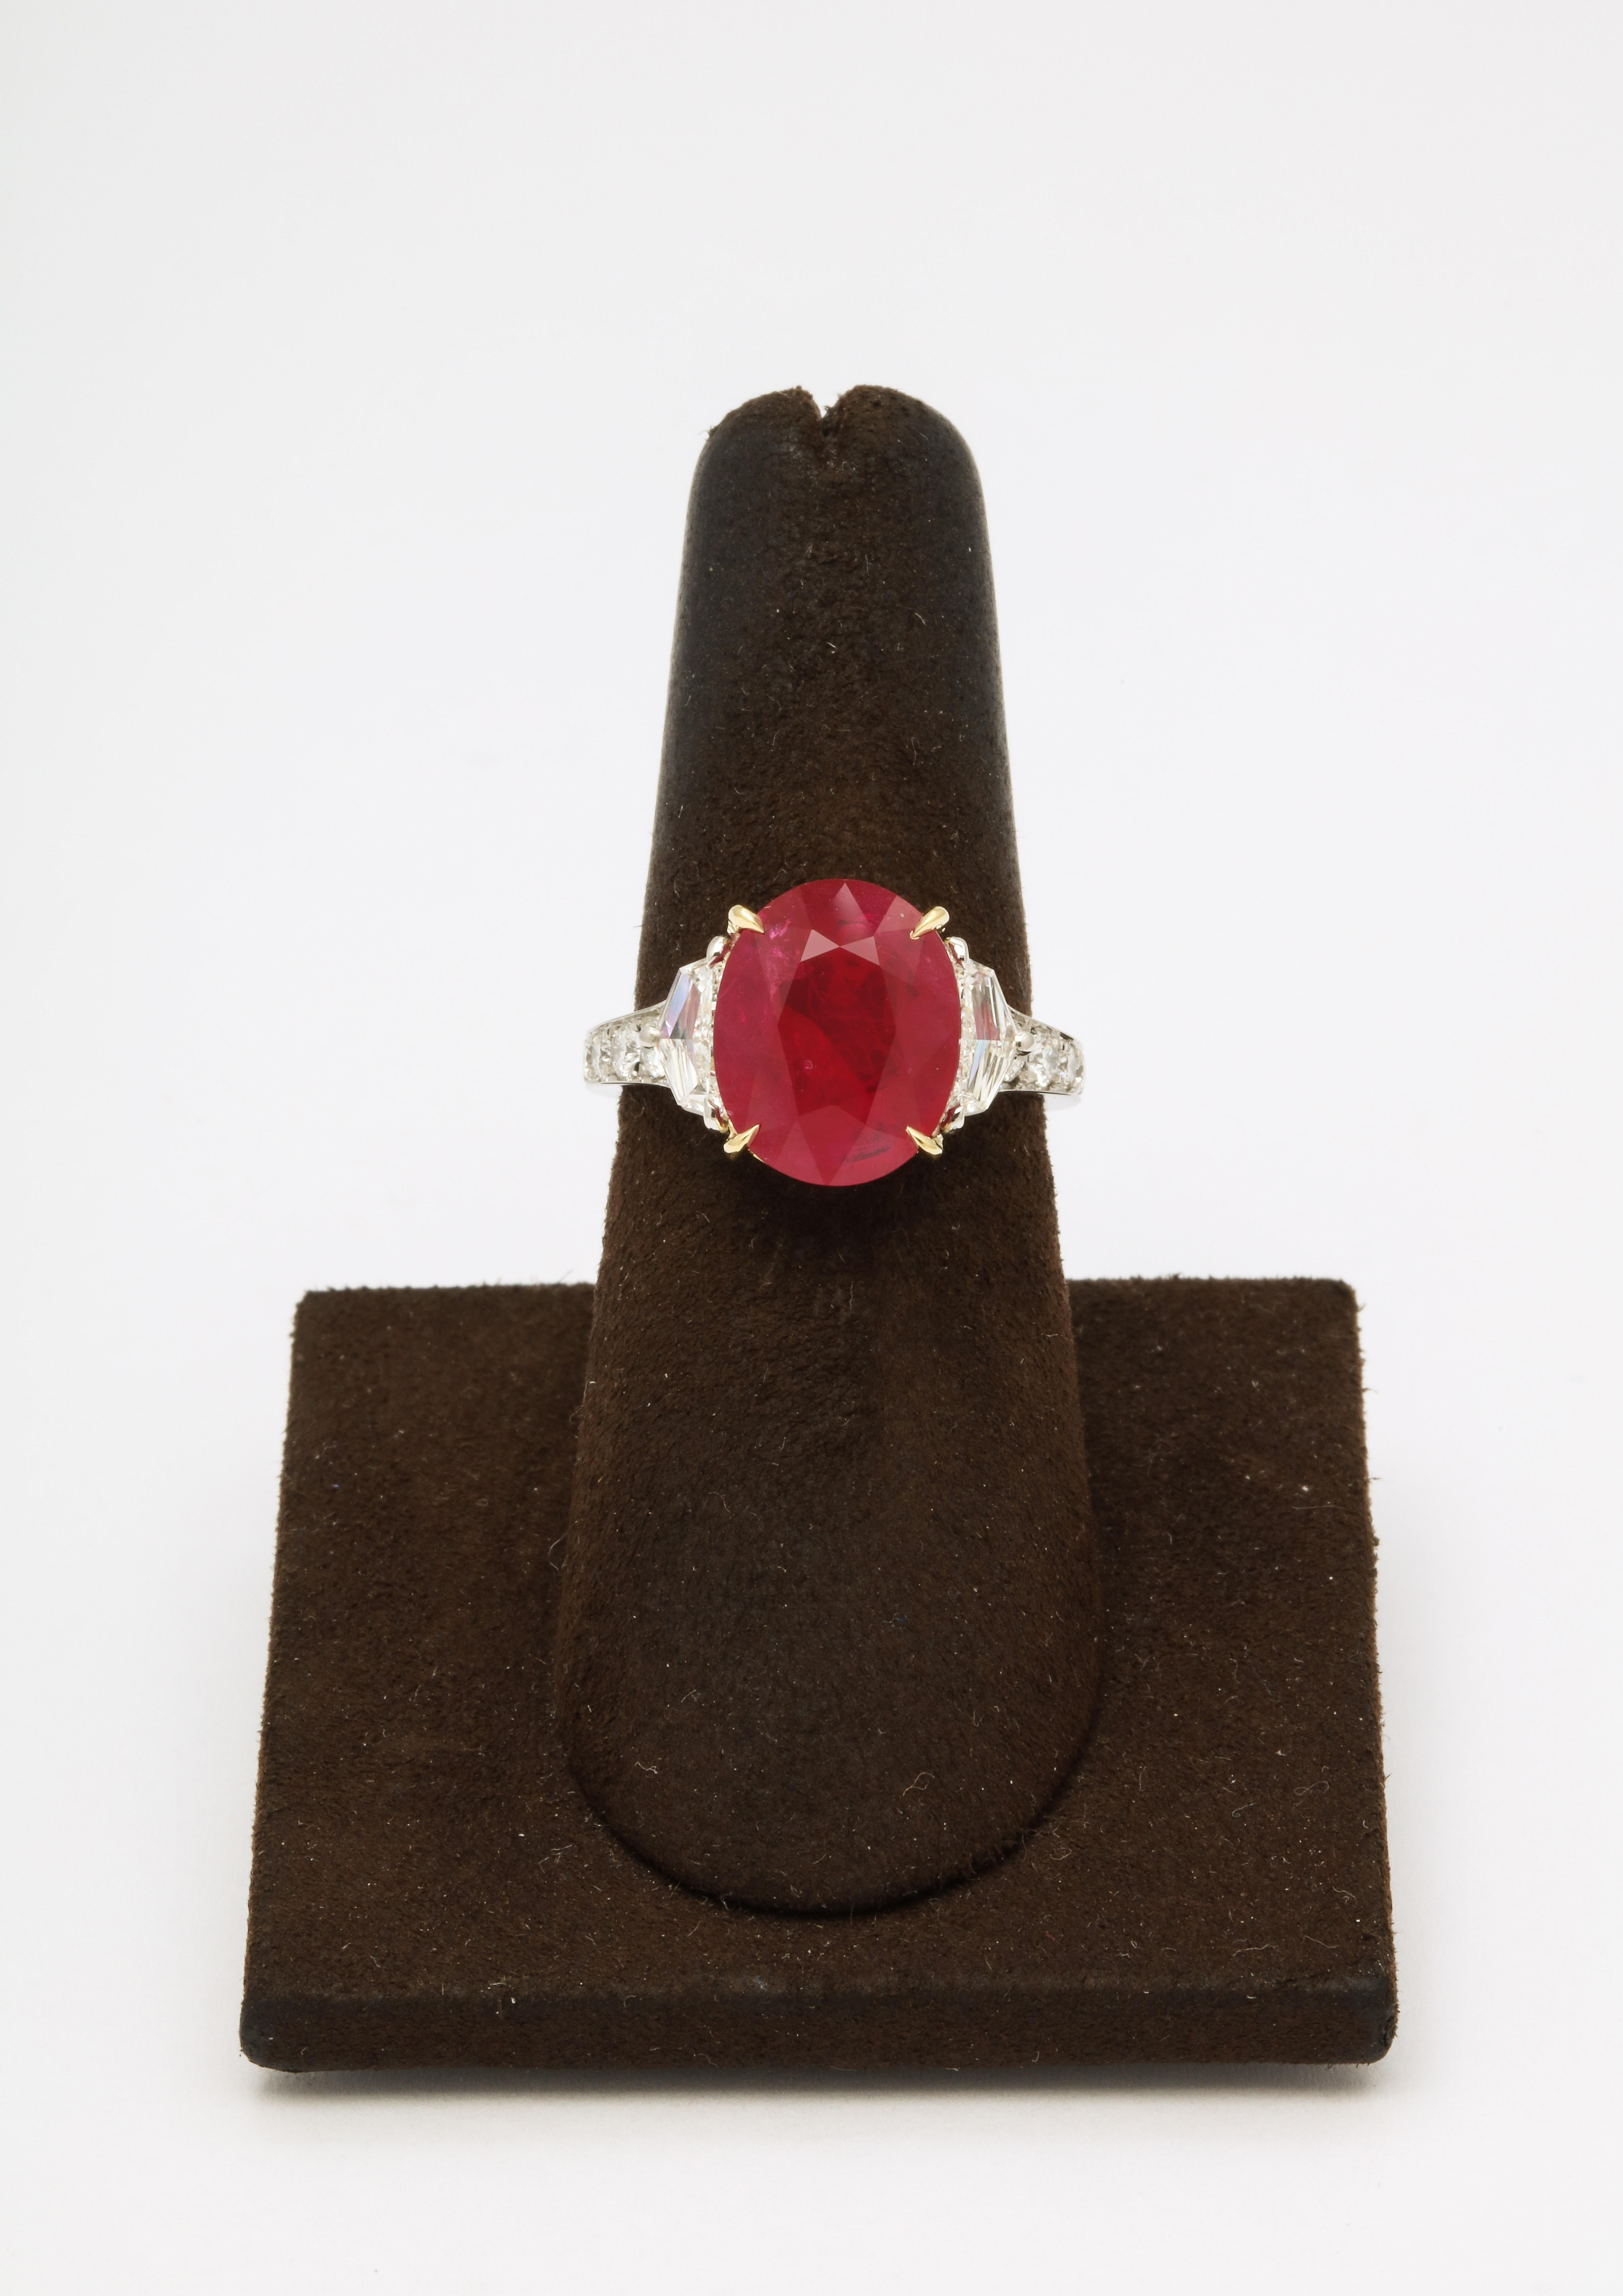 
Ein wunderschöner Burma-Rubin in einer atemberaubenden Diamantfassung. 

Zertifizierter 5,33 Karat 